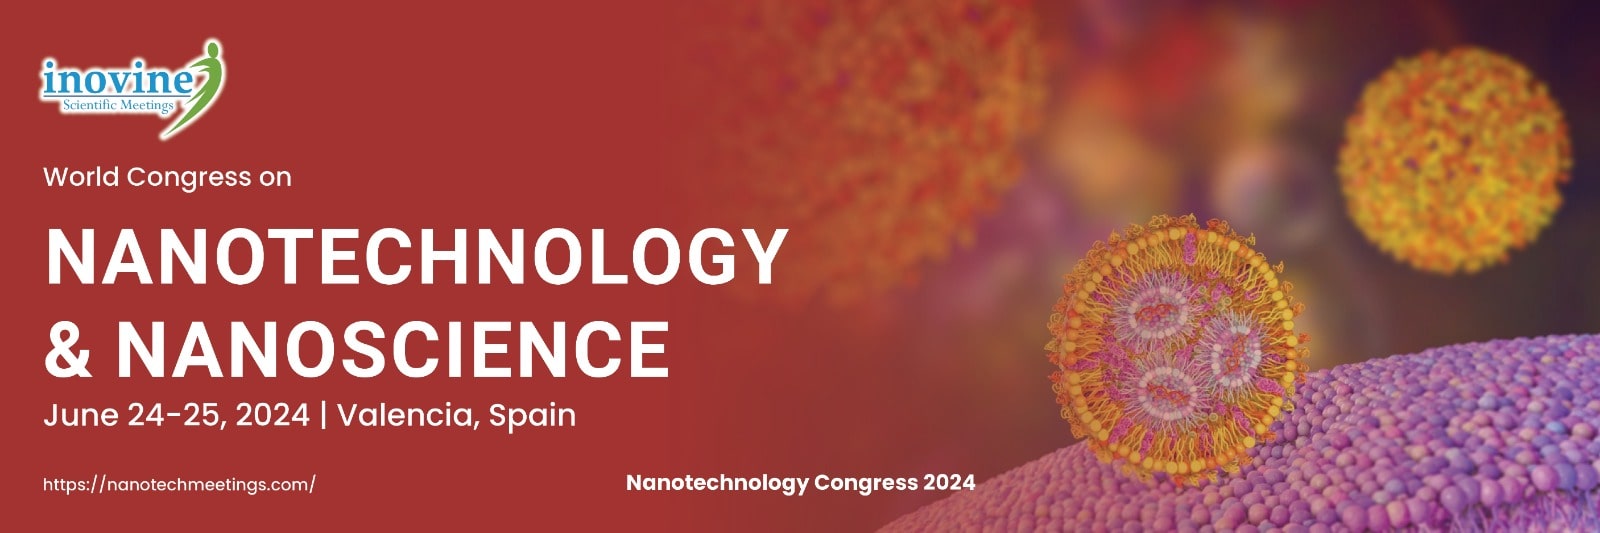 Nanotechnology Congress 2024